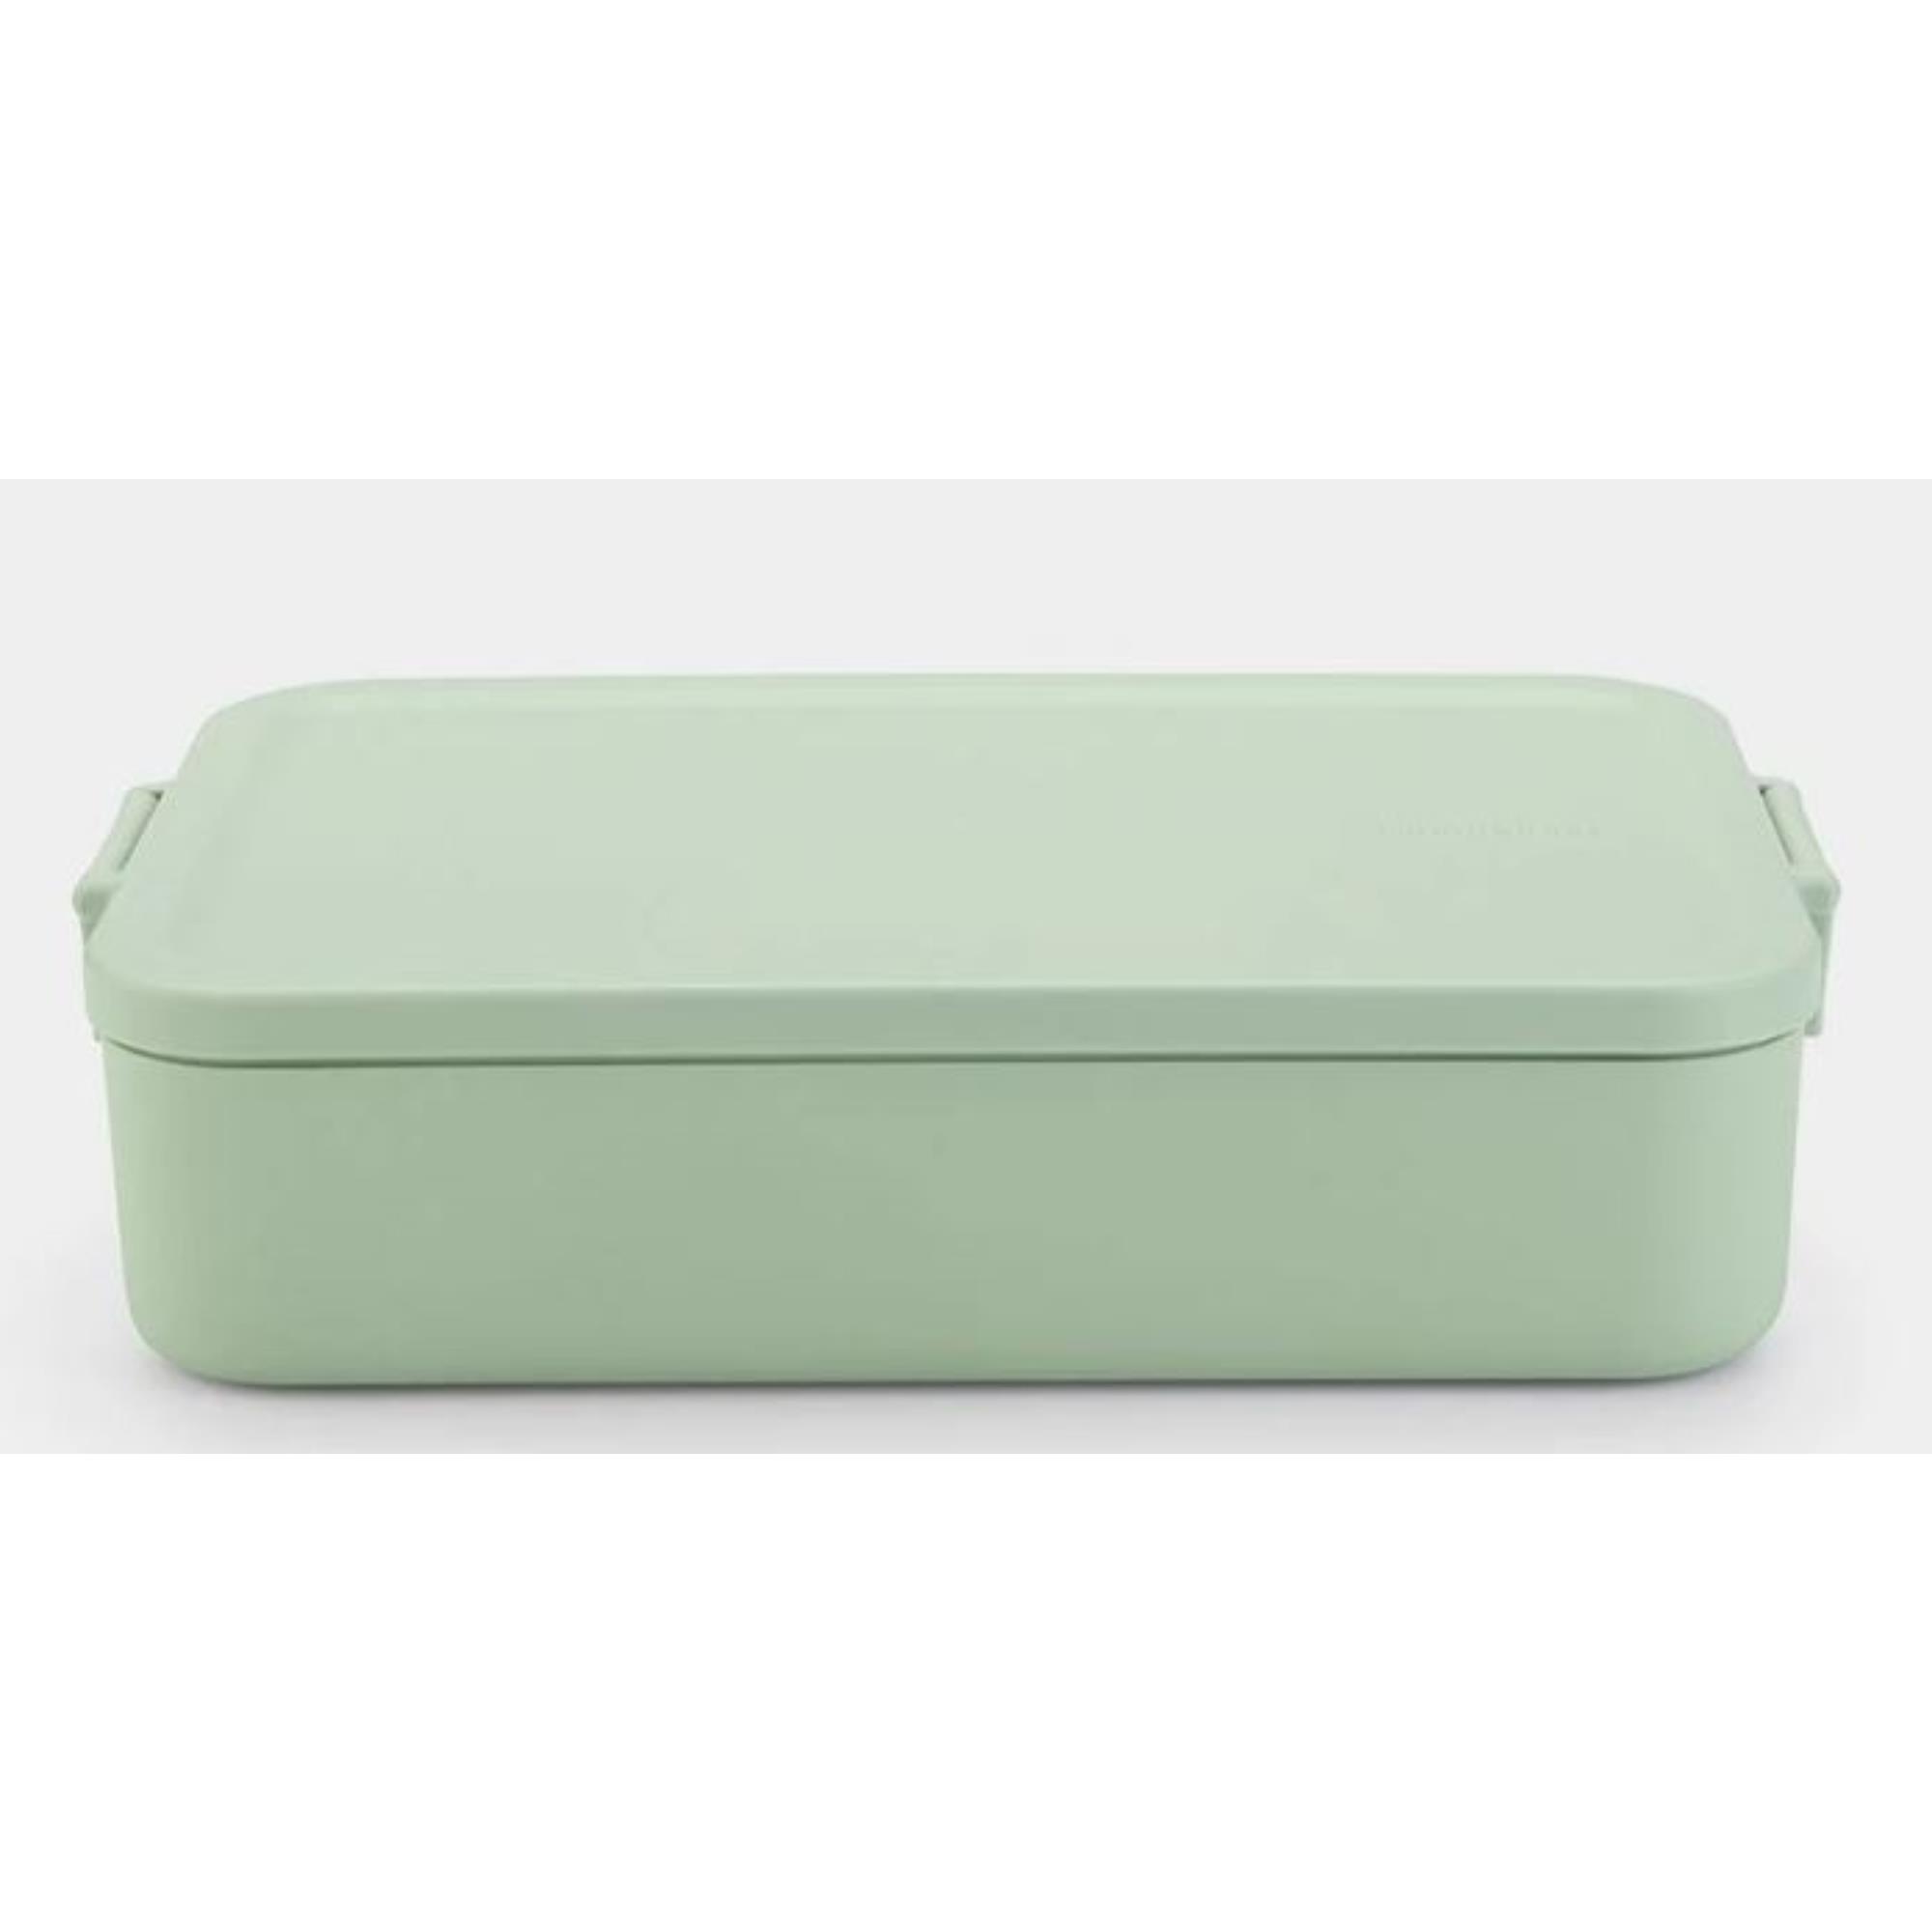 Brabantia Make & Take Bento Lunchbox Large Jade Green